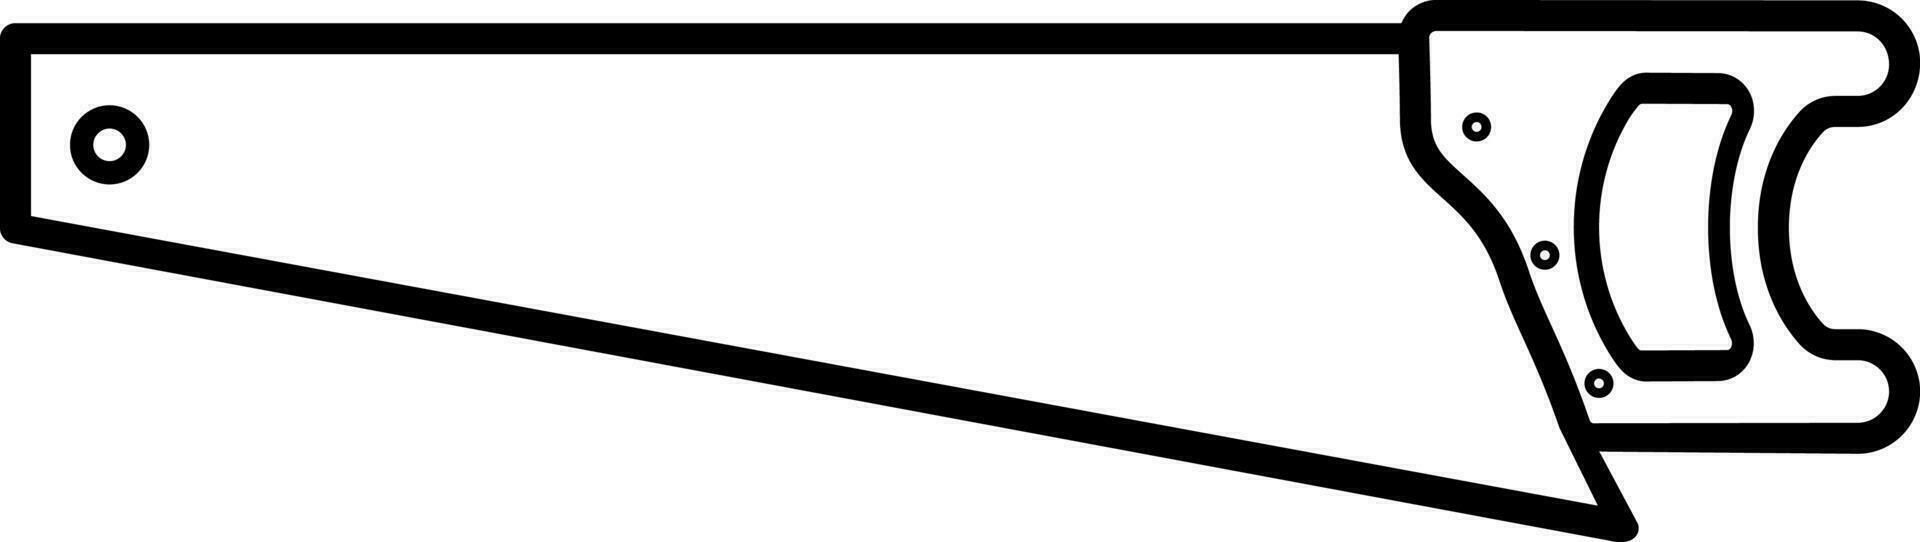 Säge-Symbol-Vektor-Illustration vektor